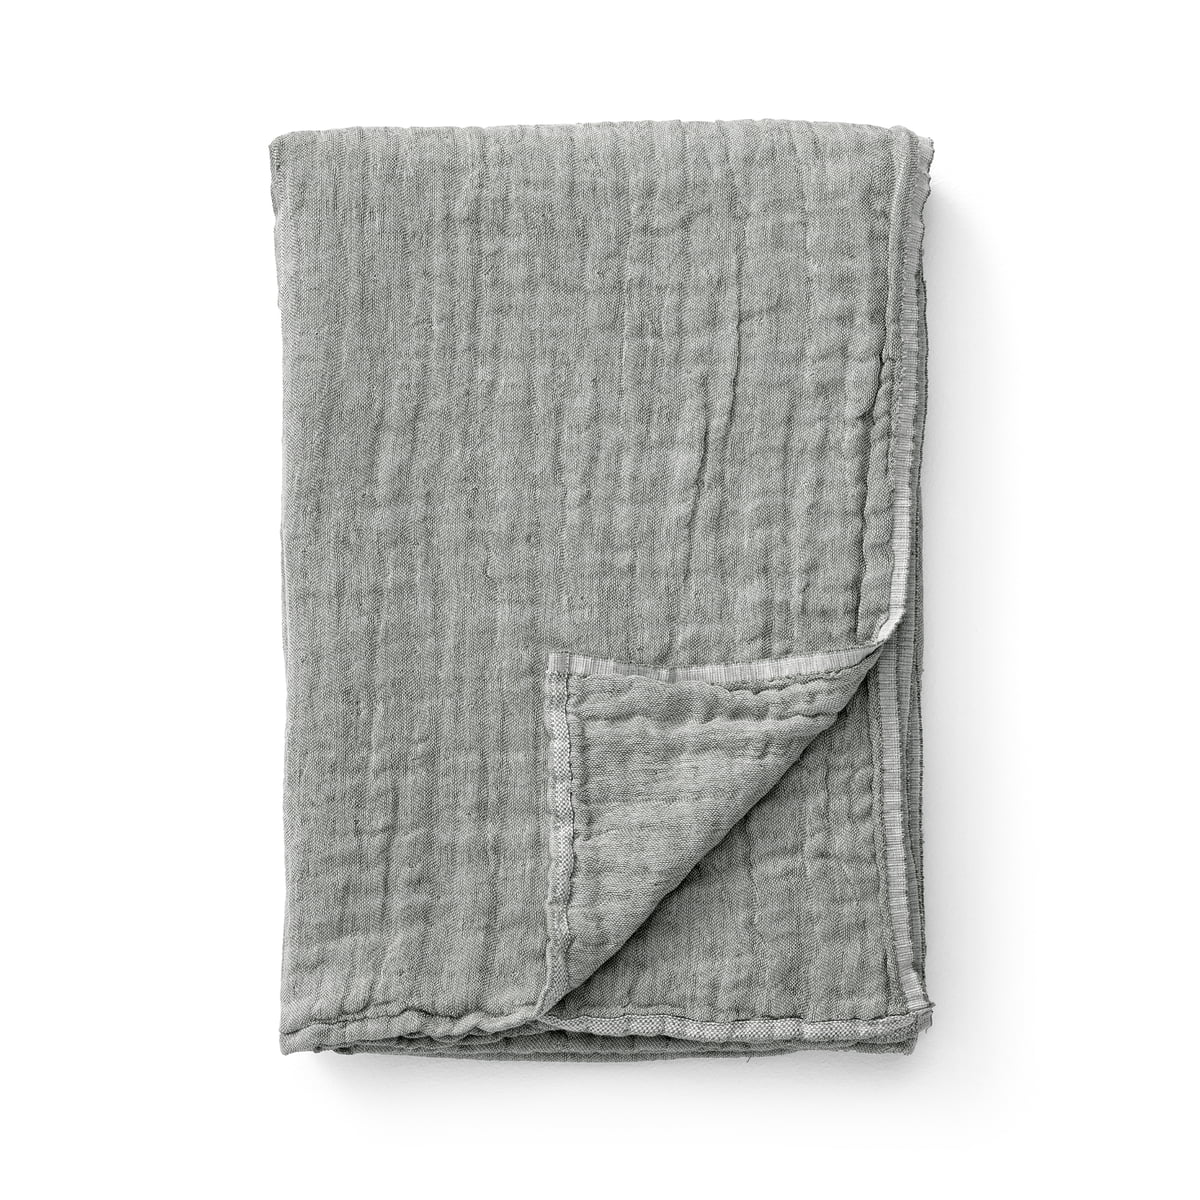 & tradition - collect sc81 couverture en coton/lin, 140 x 210 cm, mousse